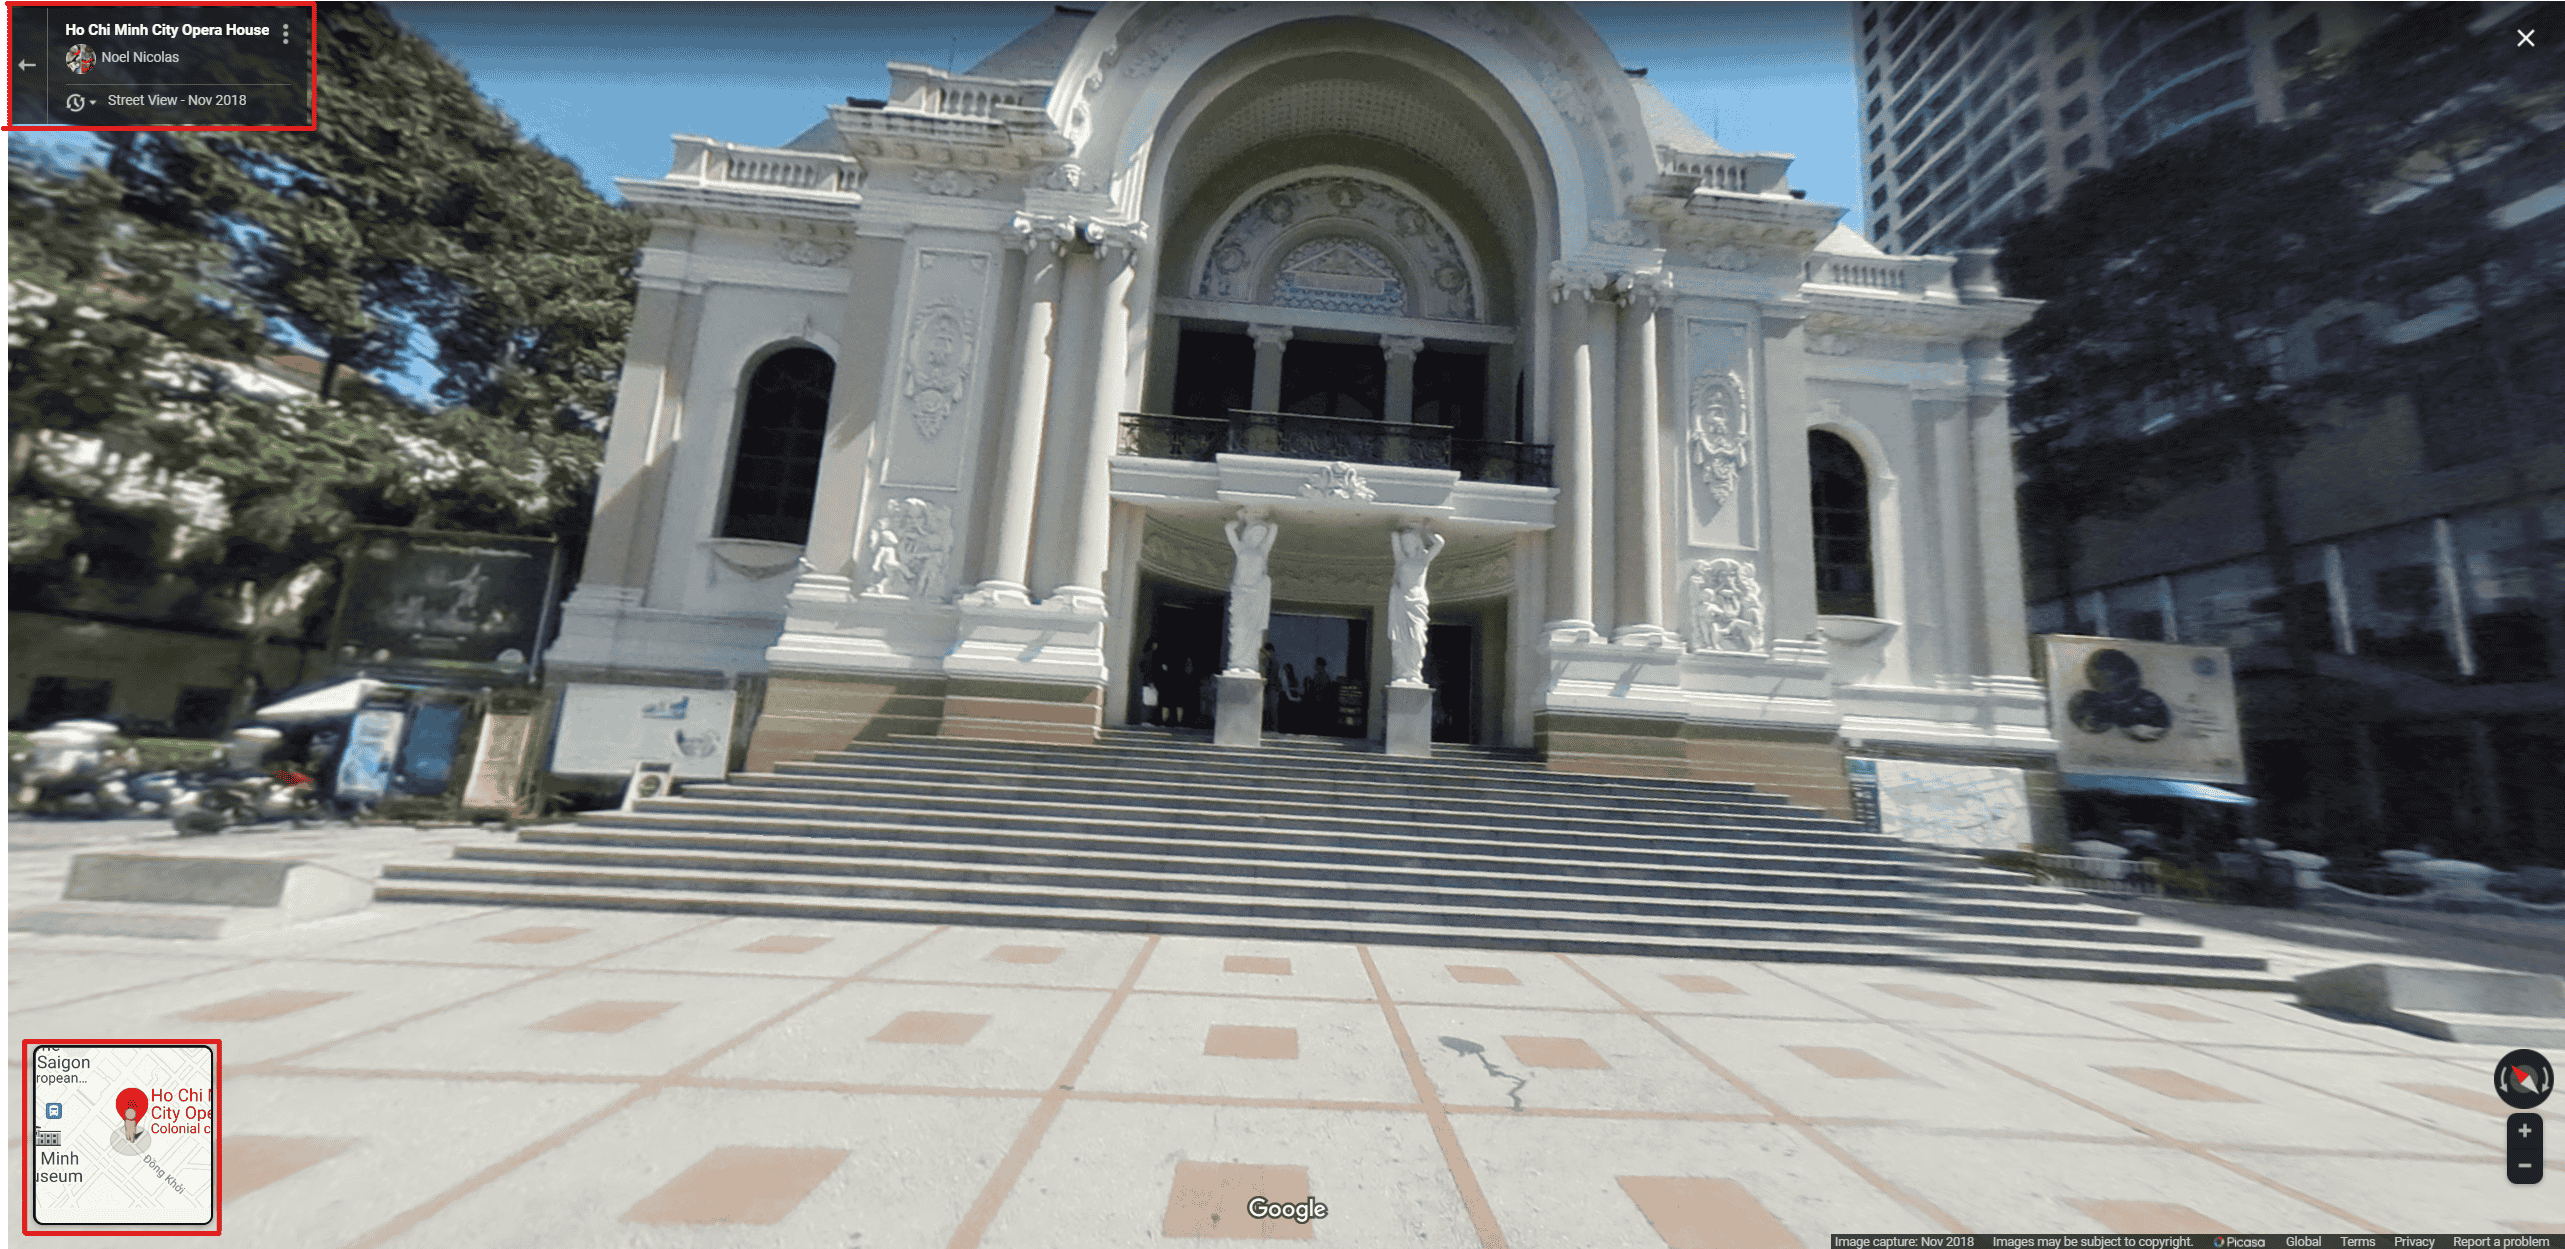 Street view Nhà hát thành phố trên Google maps